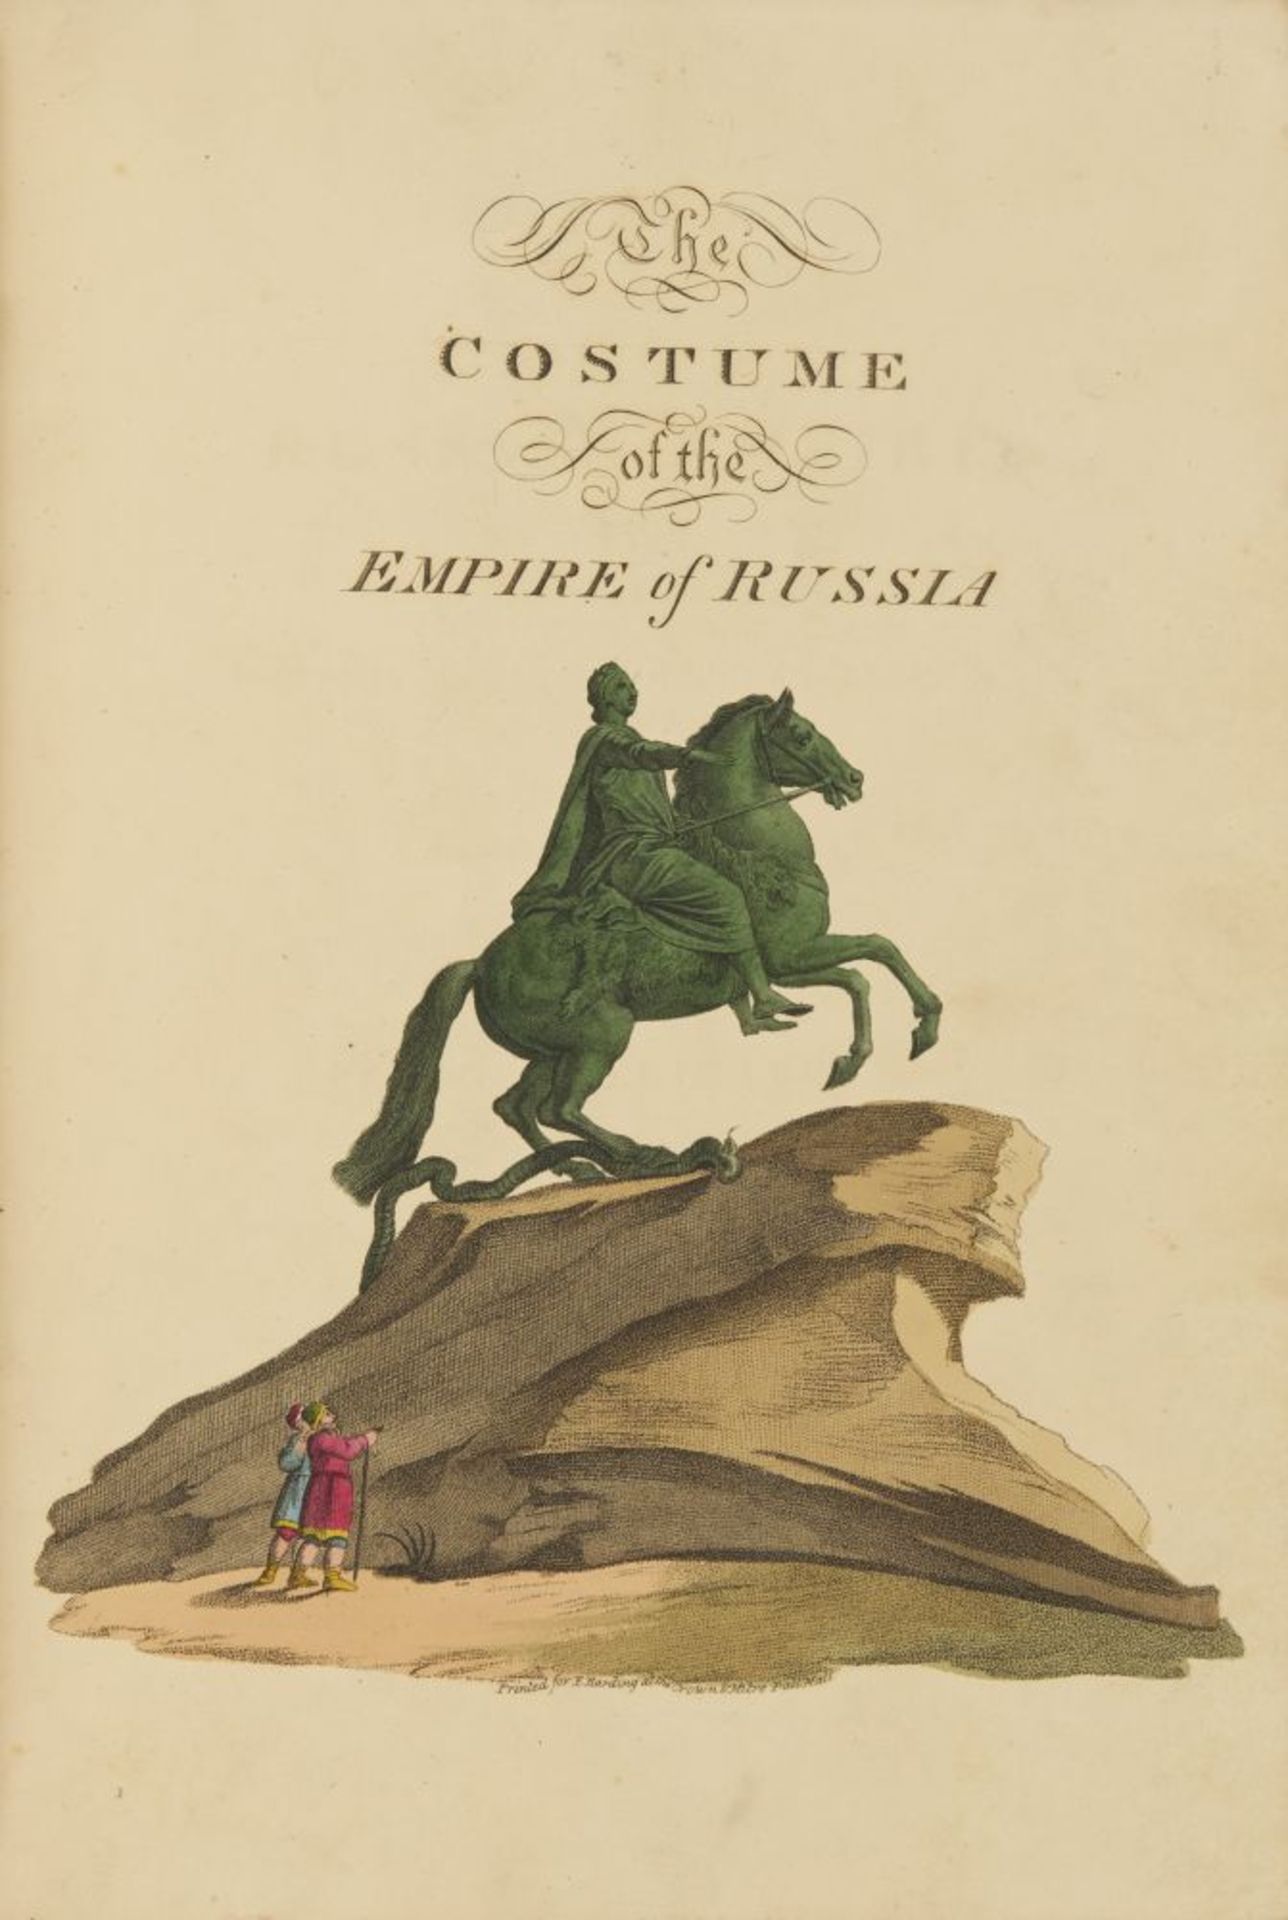 E. Harding, Costume ot the Russian Empire. Ldn 1811.